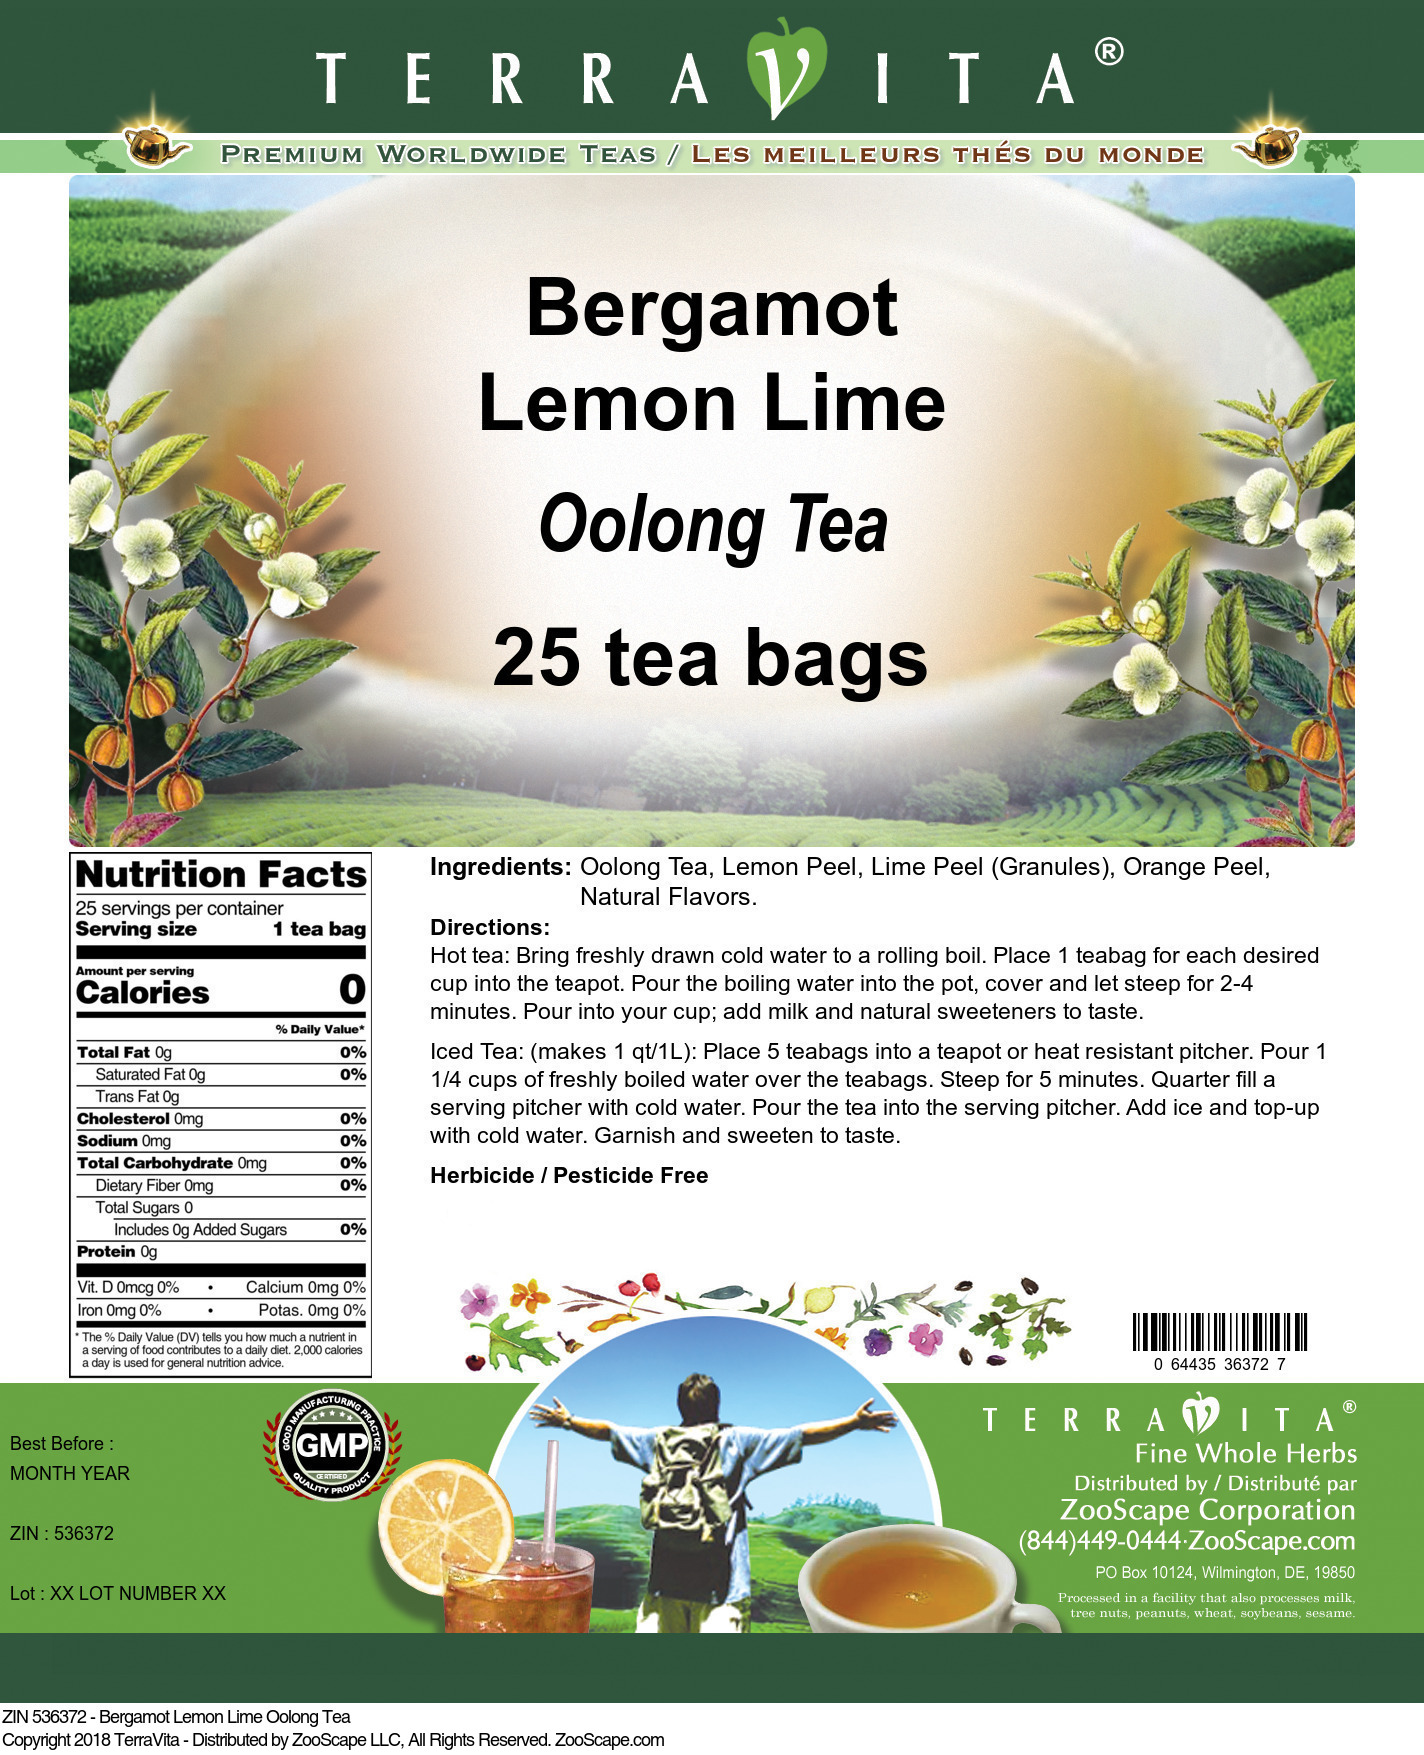 Bergamot Lemon Lime Oolong Tea - Label